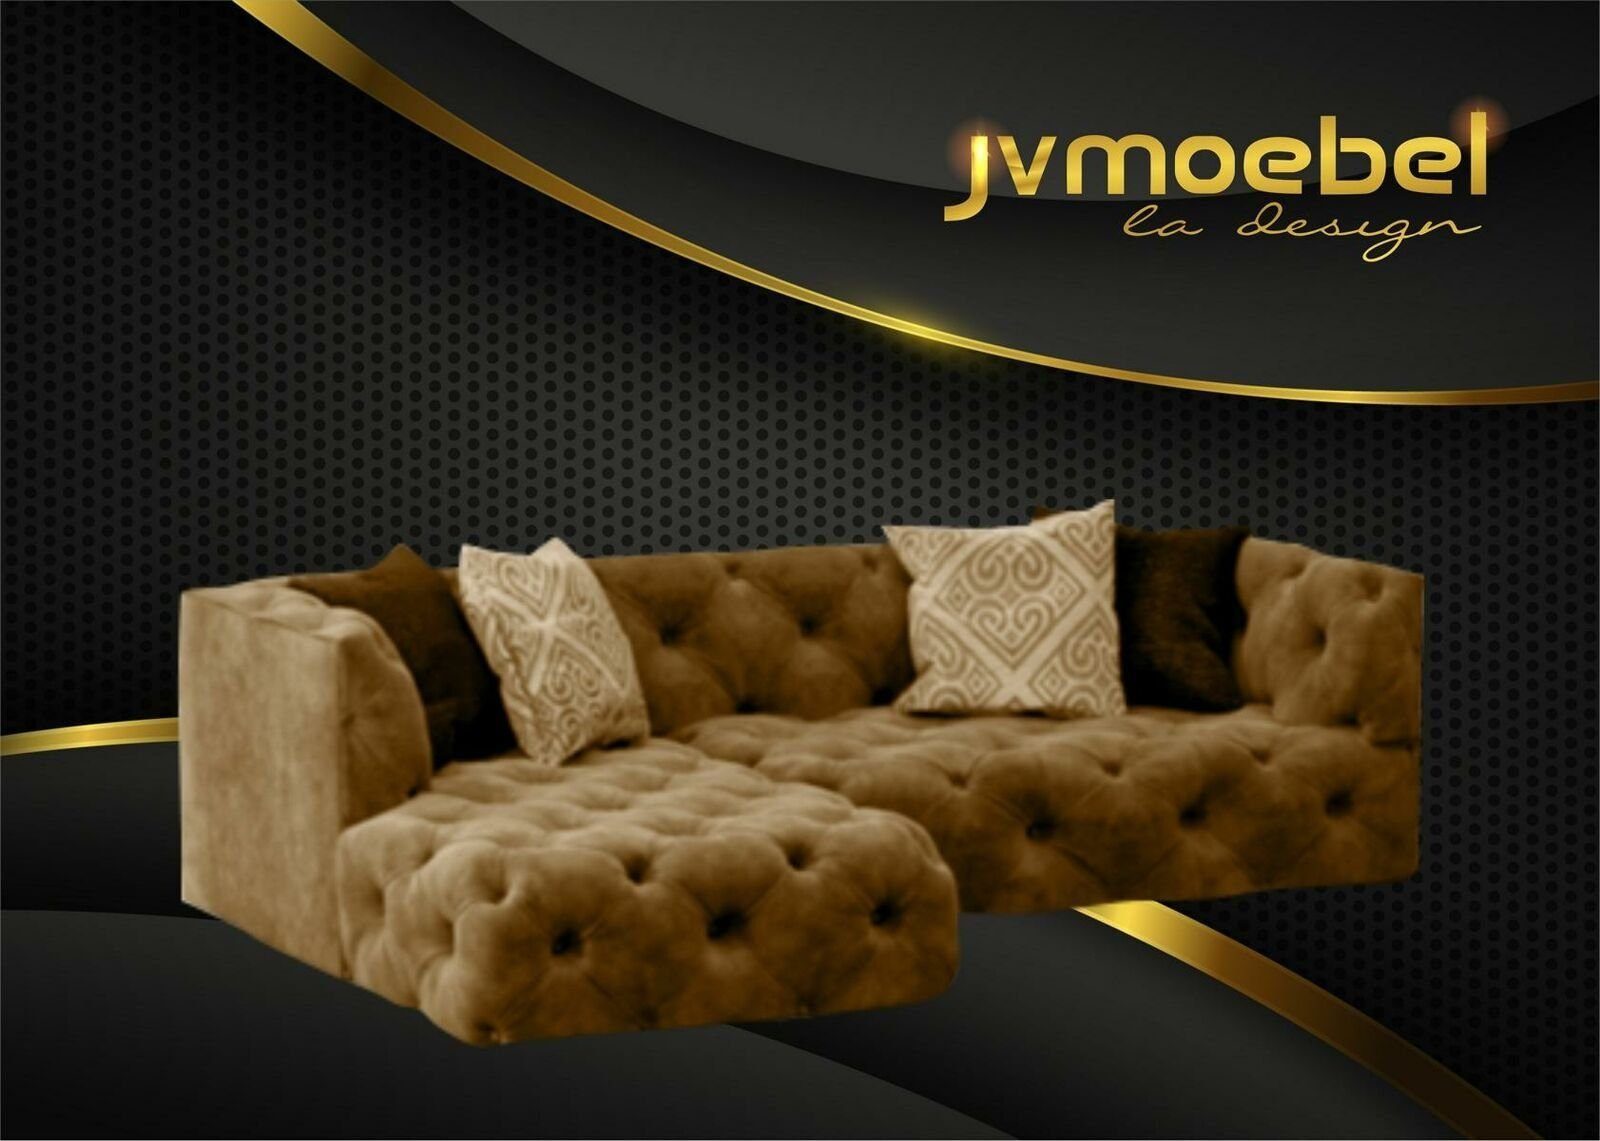 JVmoebel Ecksofa Braunes Chesterfield L-Form Couch Design Polstermöbel Neu, Made in Europe Beige